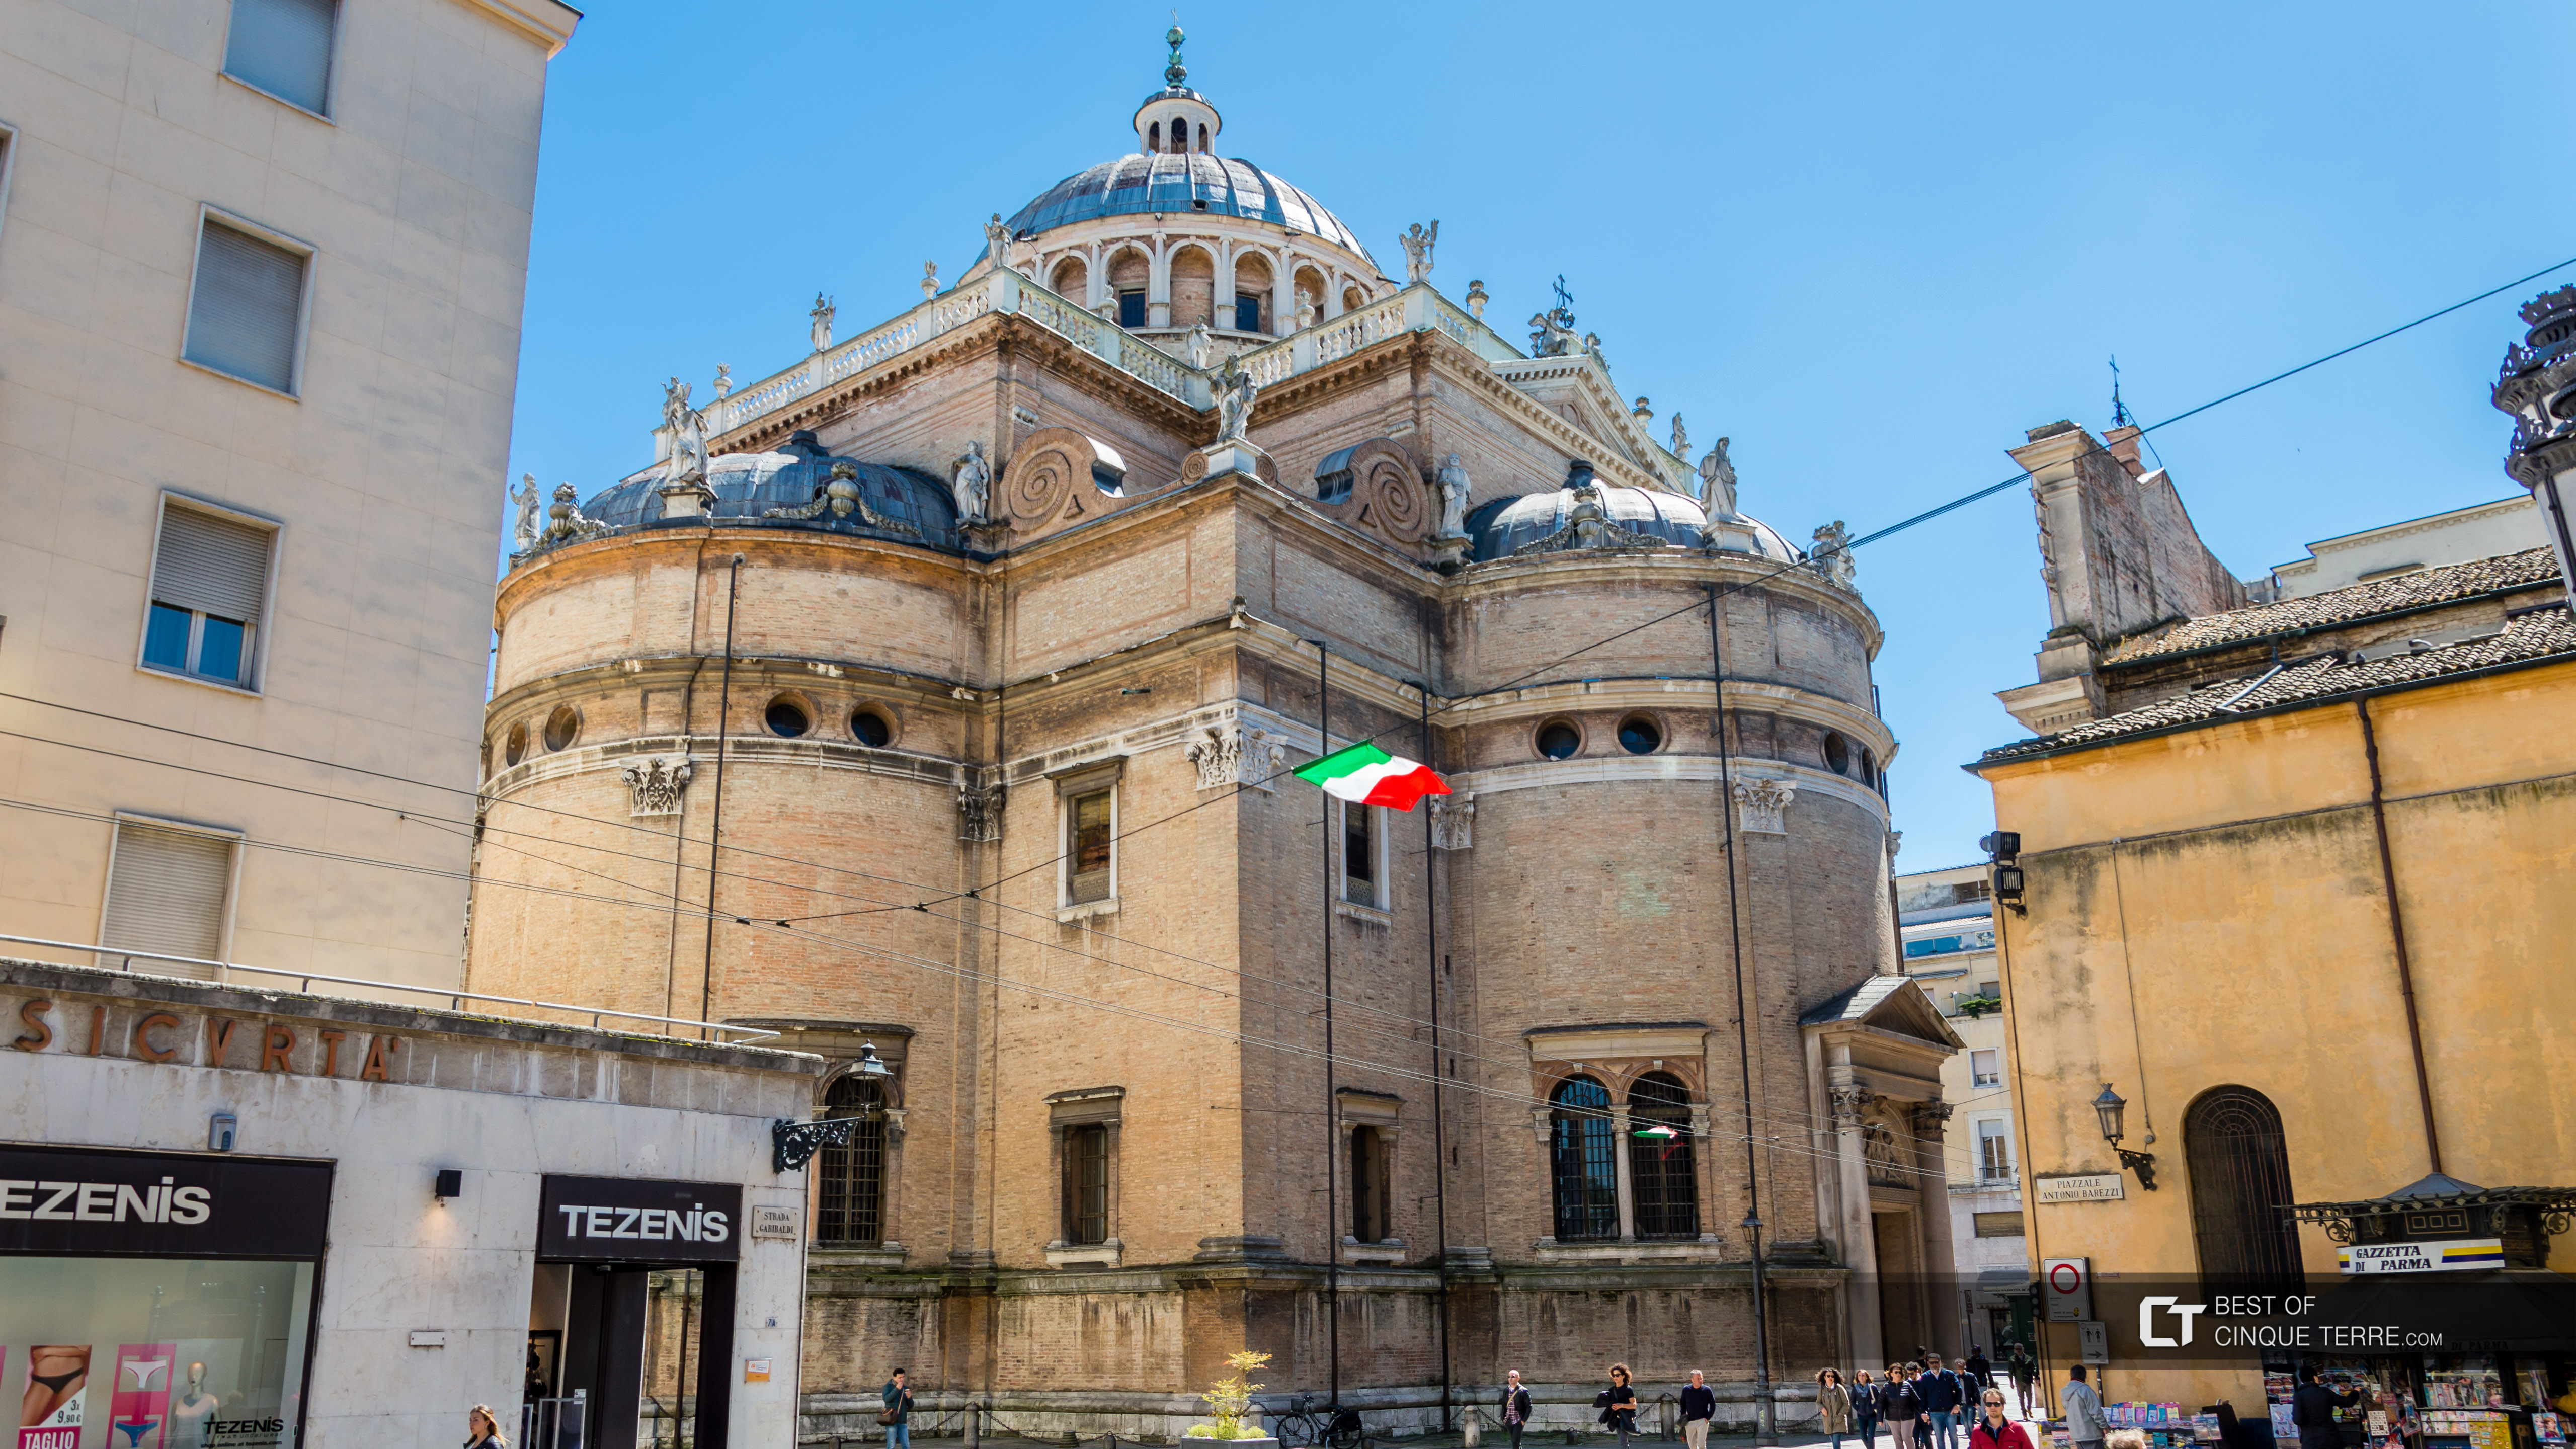 Базилика Санта-Мария-делла-Стекката, Парма, Италия